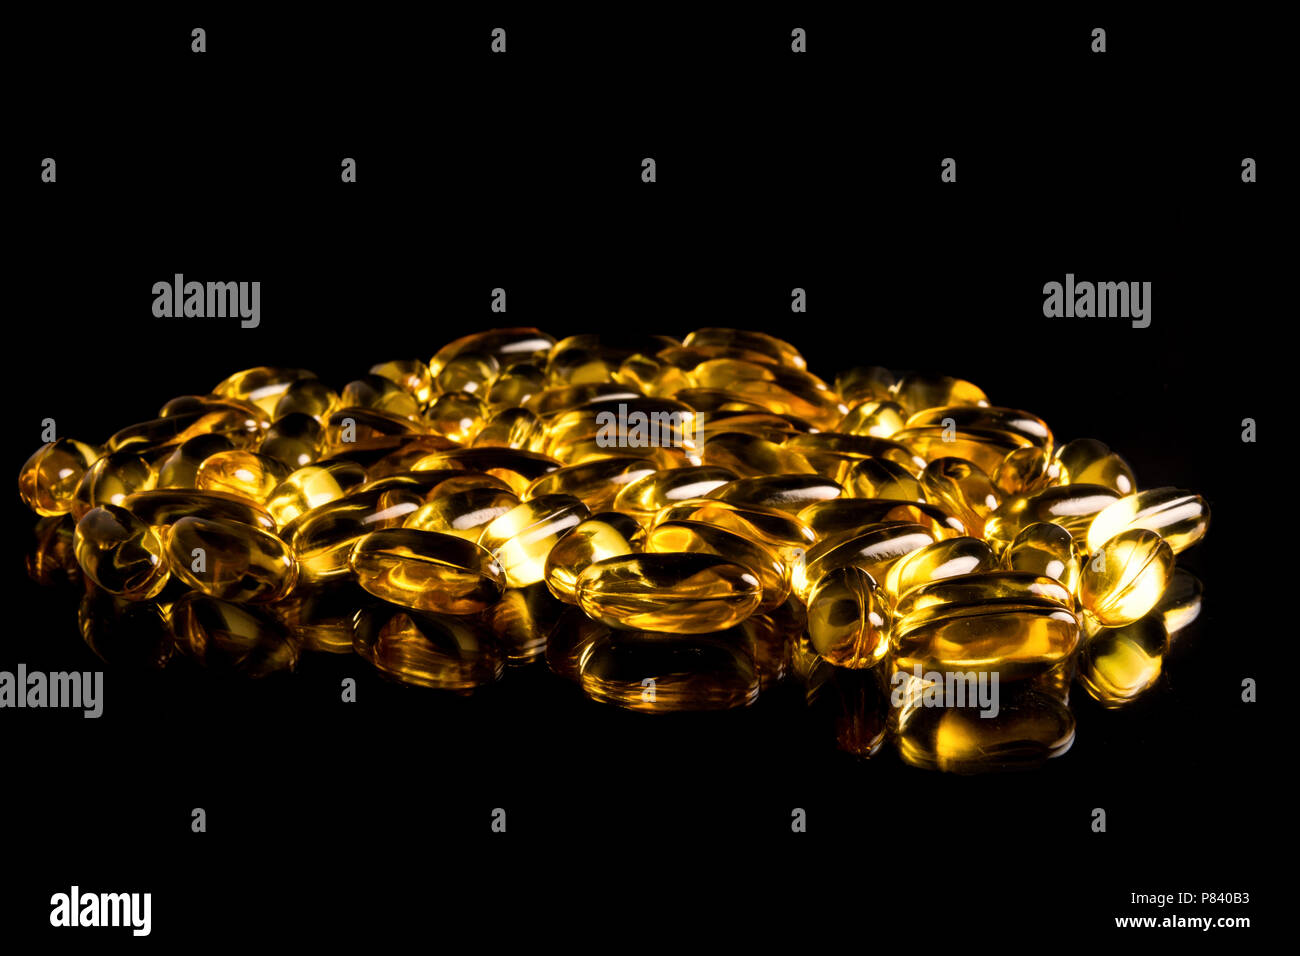 Niveau des yeux close up of yellow pills Banque D'Images